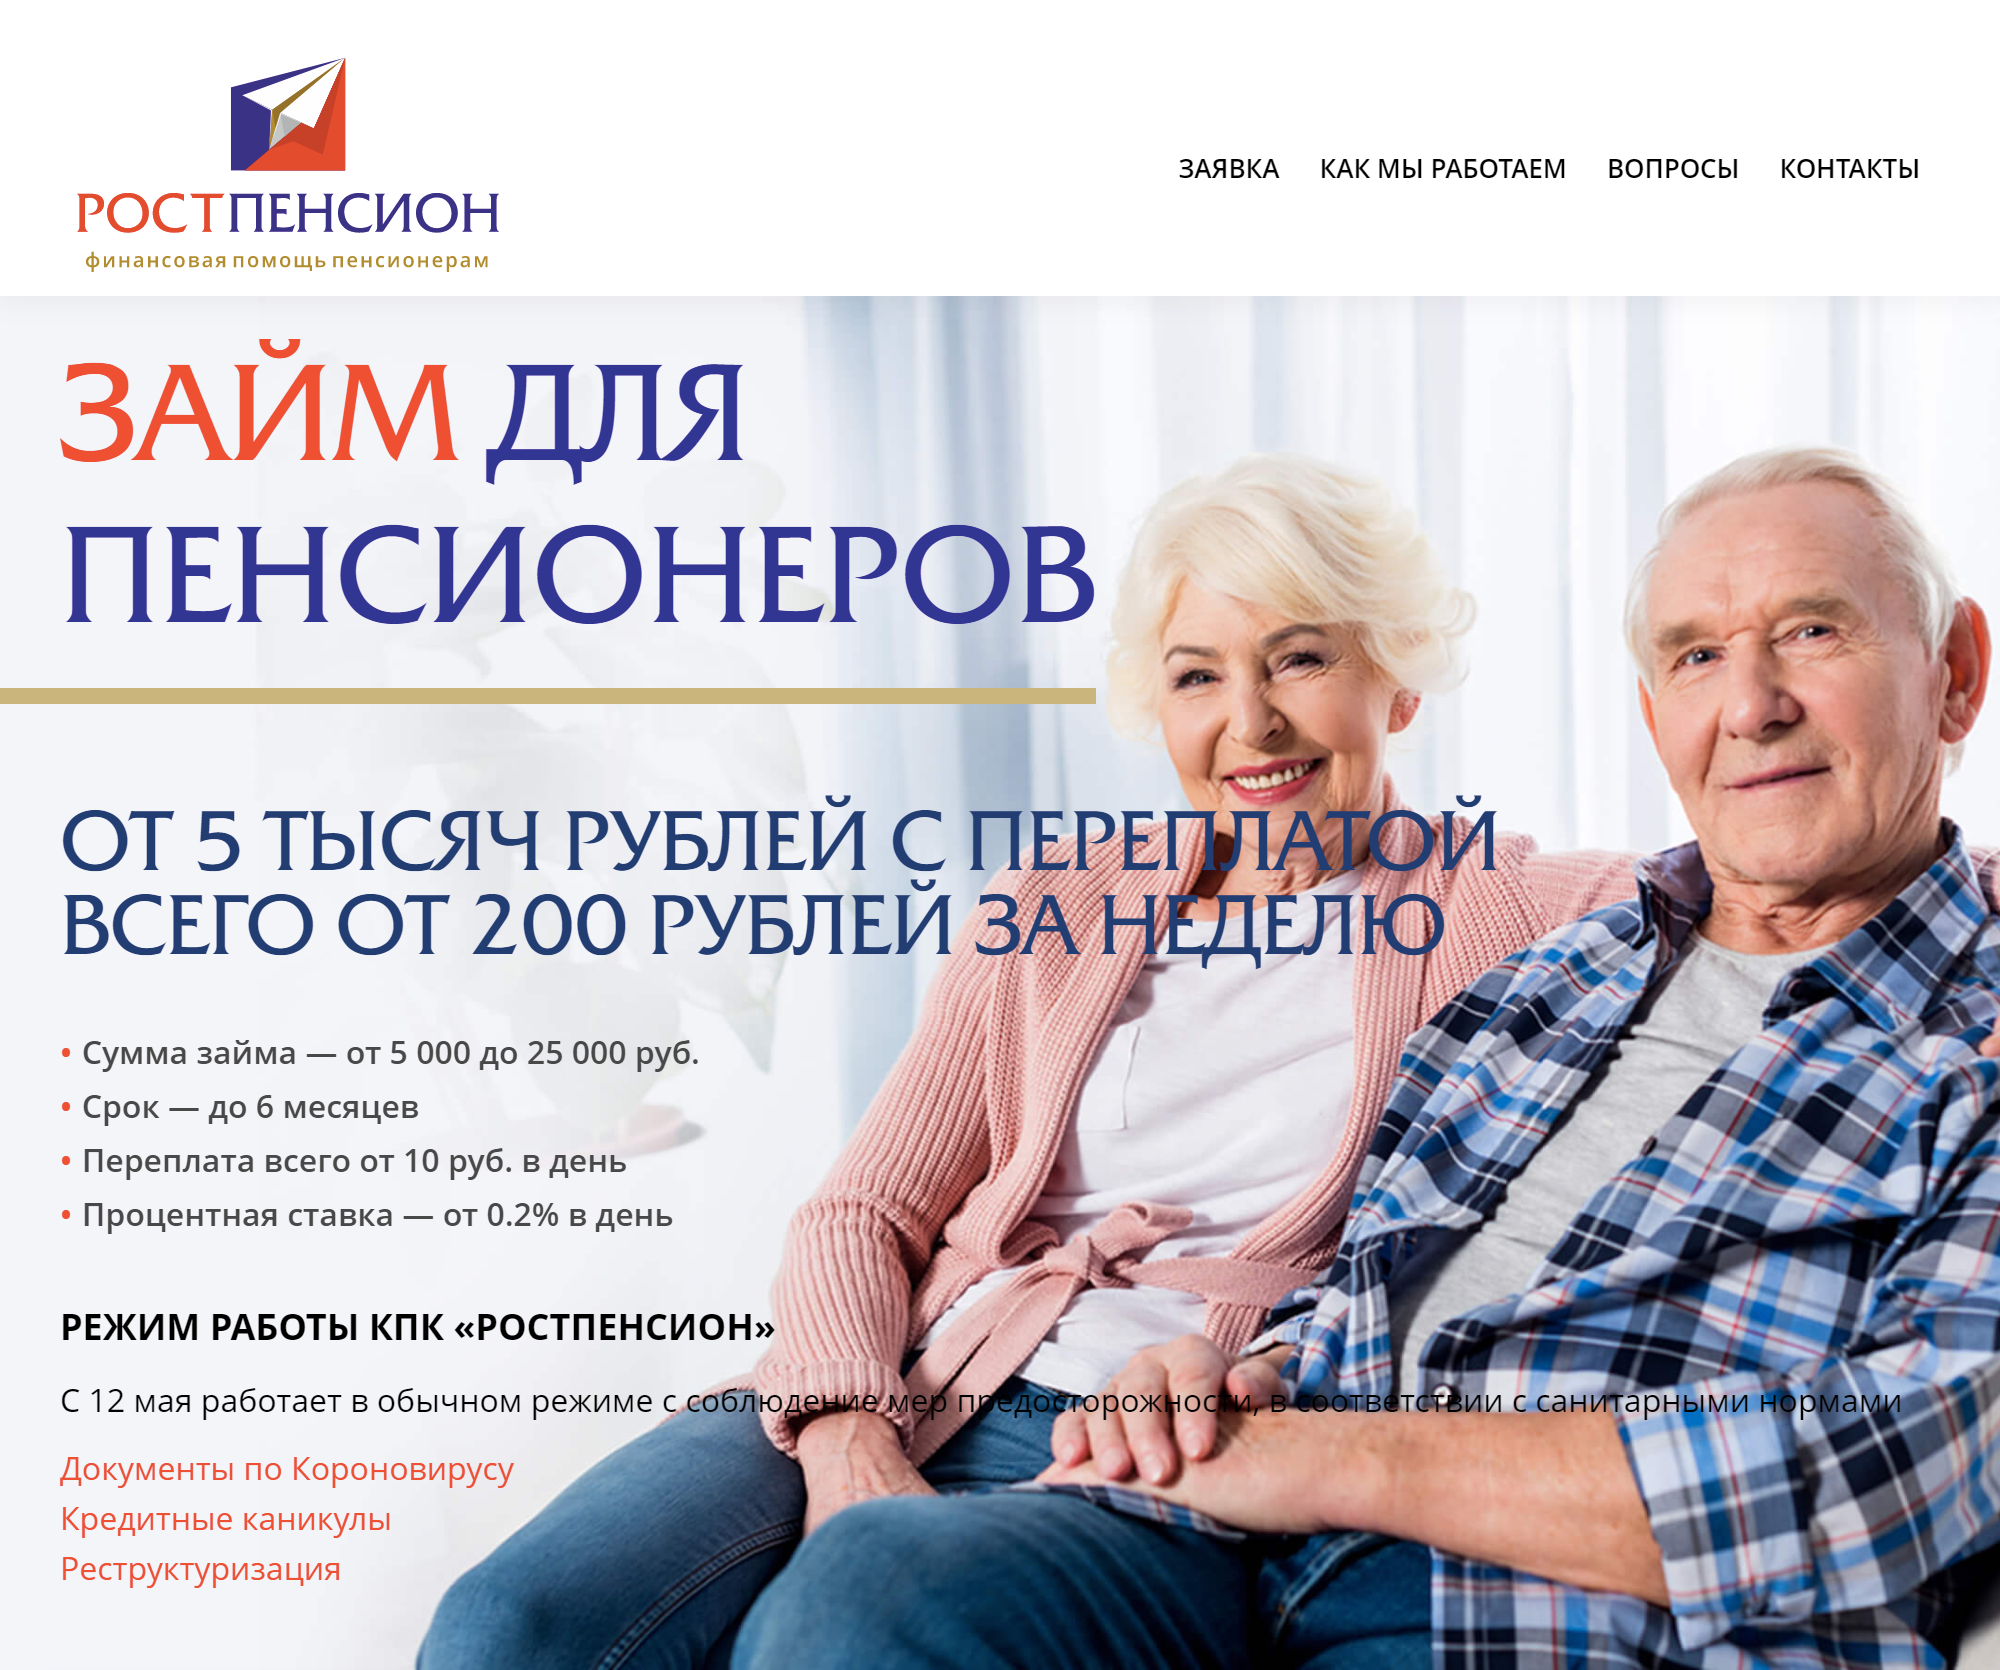 Взять Займы в Раменском для пенсионеров онлайн